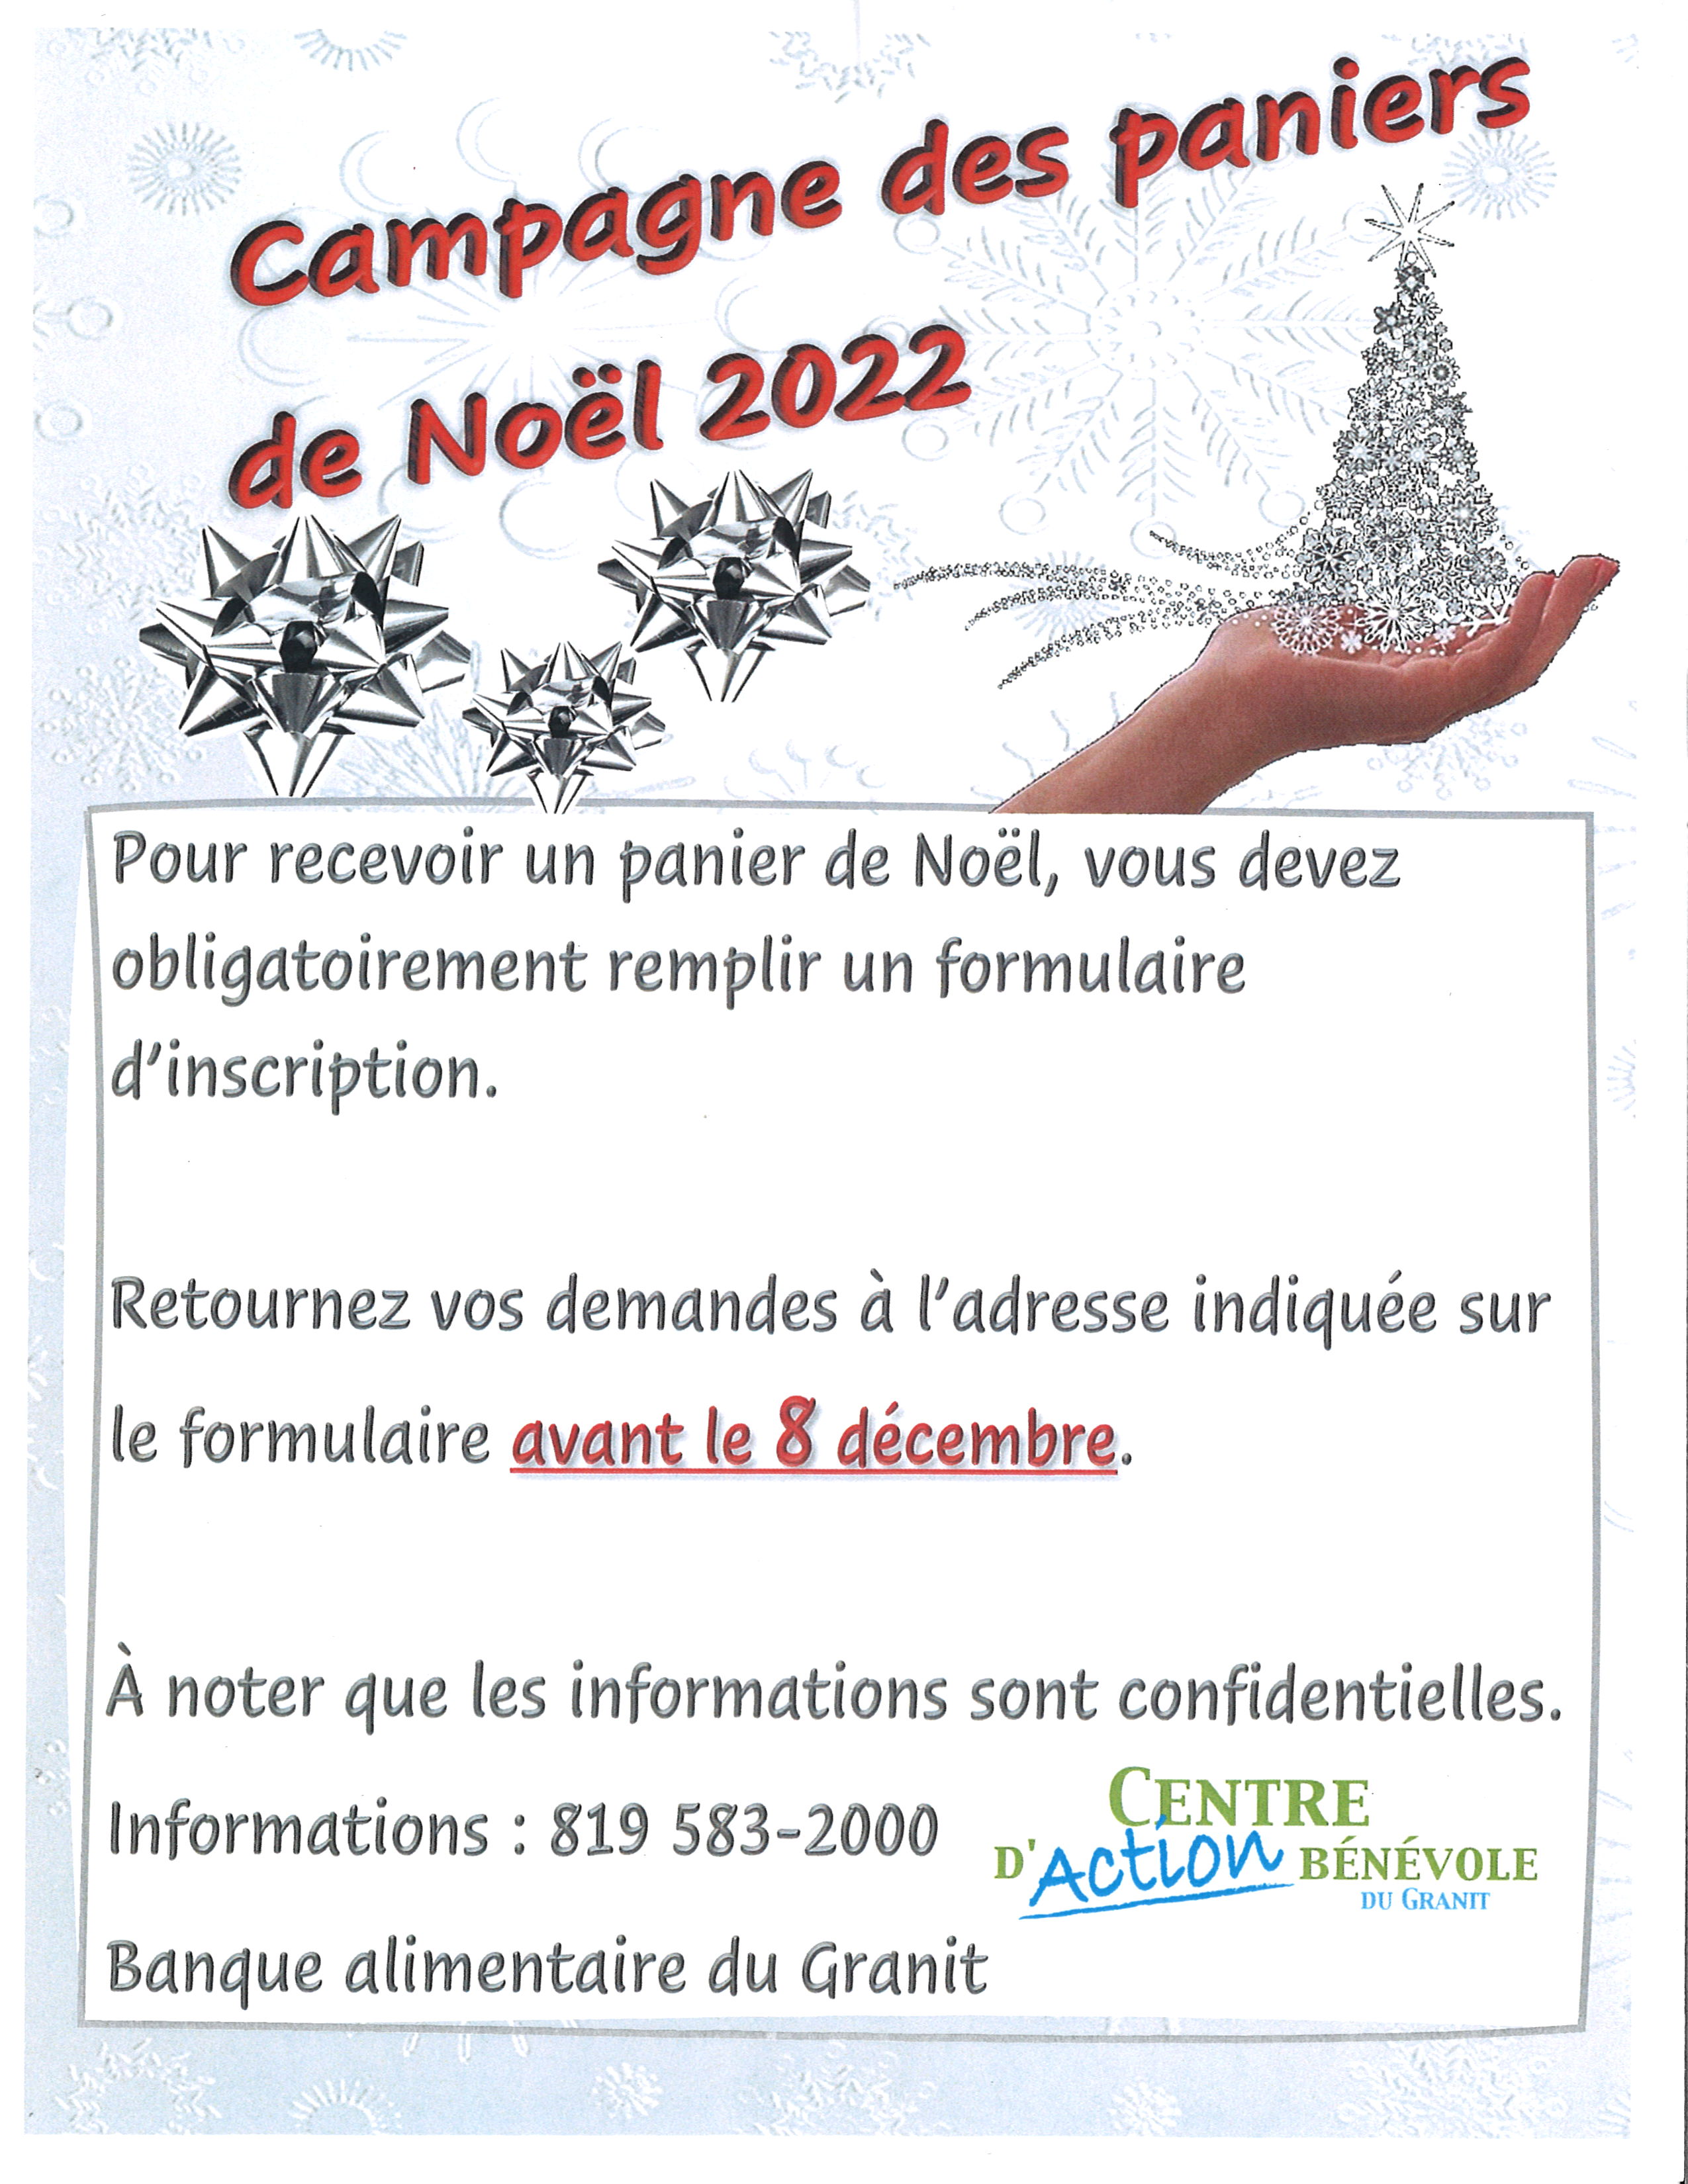 Inscriptions aux paniers de Noël - 30 NOVEMBRE - Ville de Rigaud